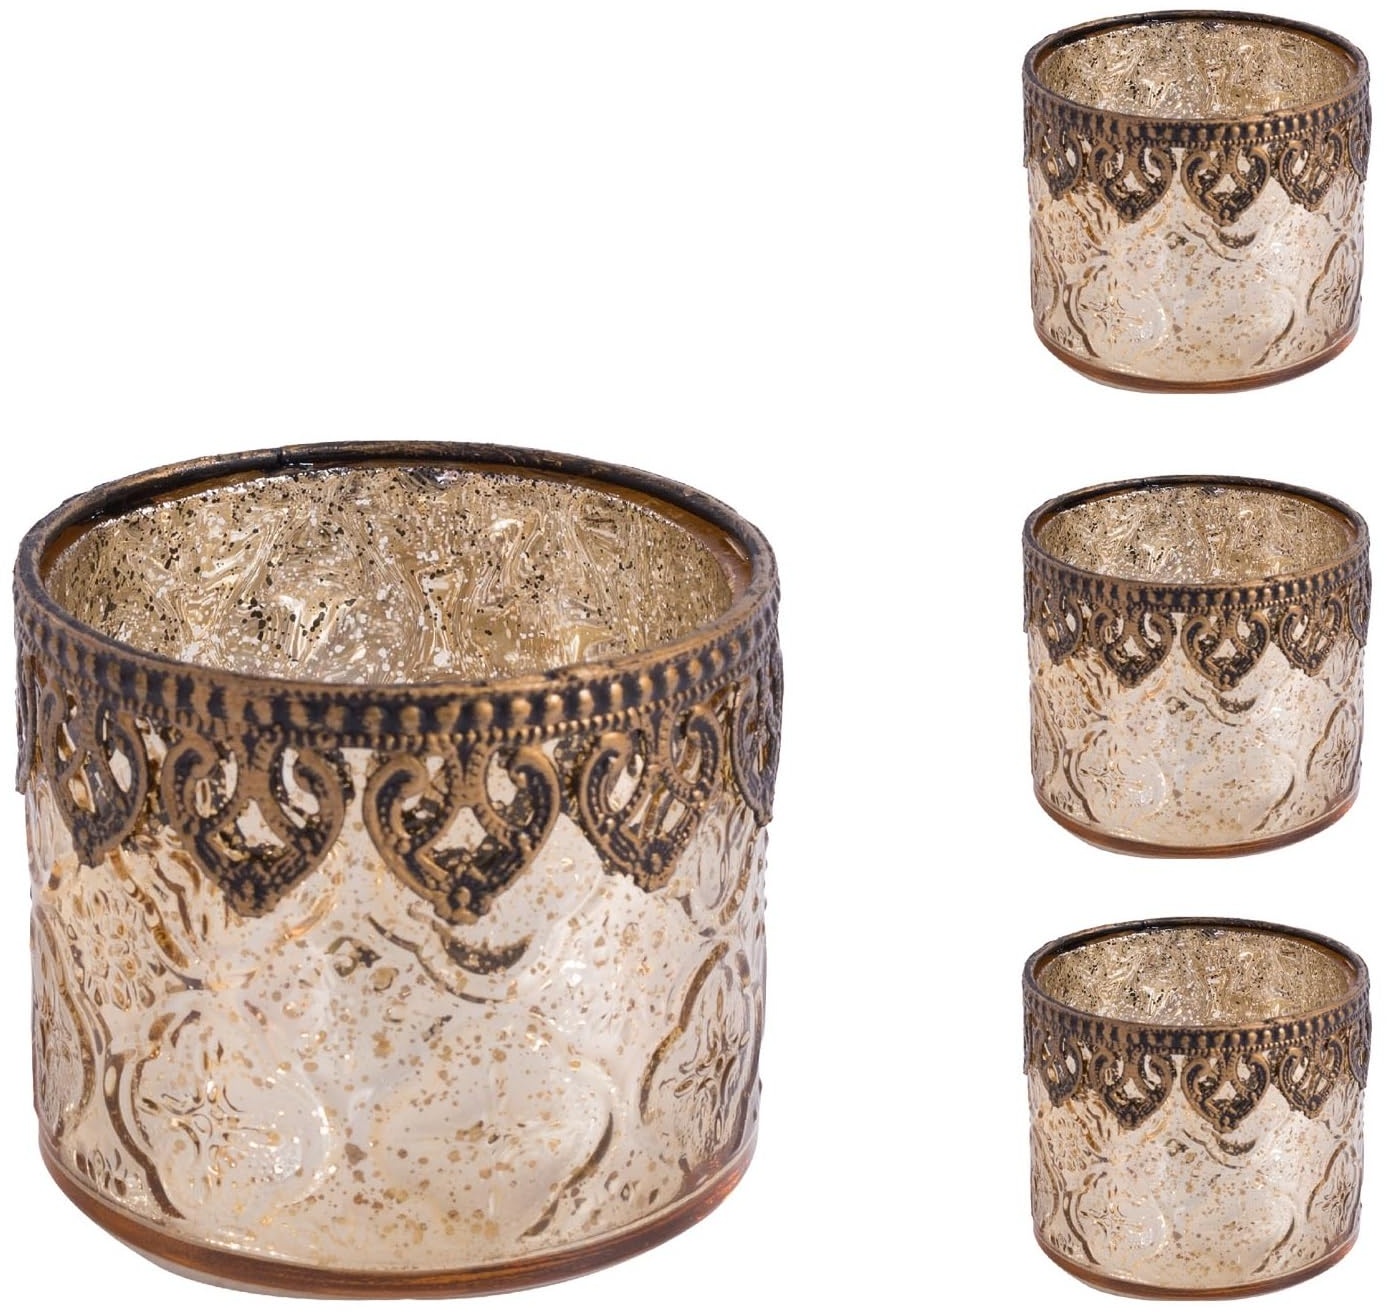 Jinfa 4er-Set orientalischer Teelichthalter aus Glas Windlichter Kerzengläser Teelichtgläser Geschenk | Zylindrische Form | Königliches Gold Ø 10cm x h 9cm